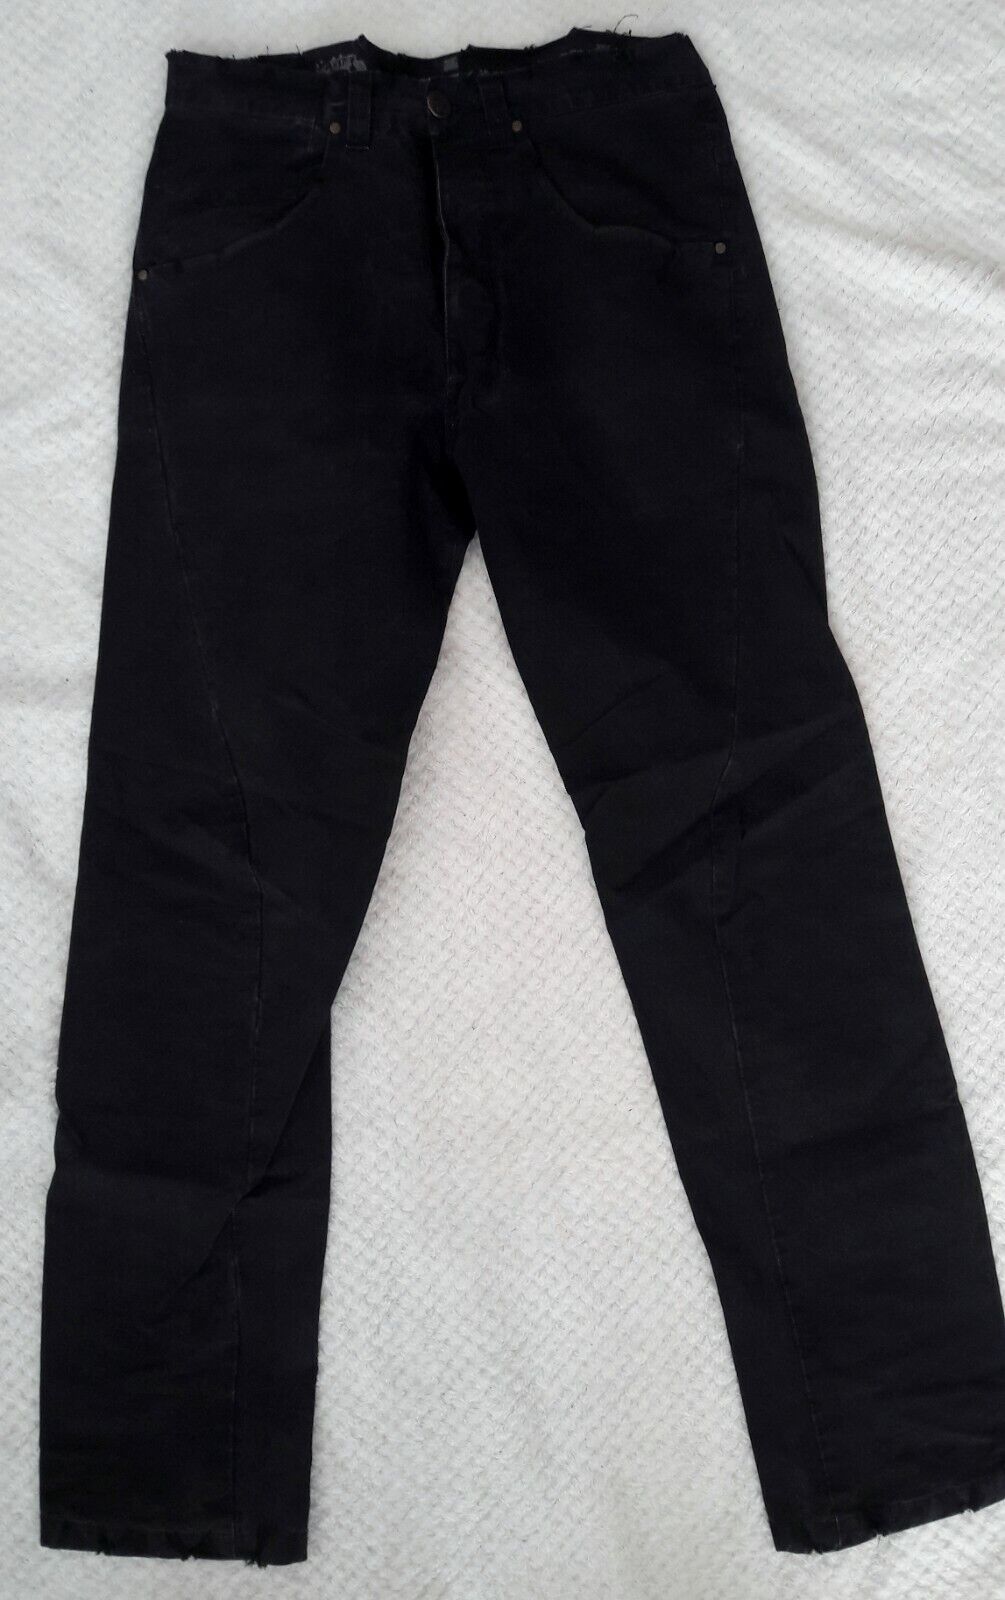 Pantalones hombre DESIGUAL negros slim fit